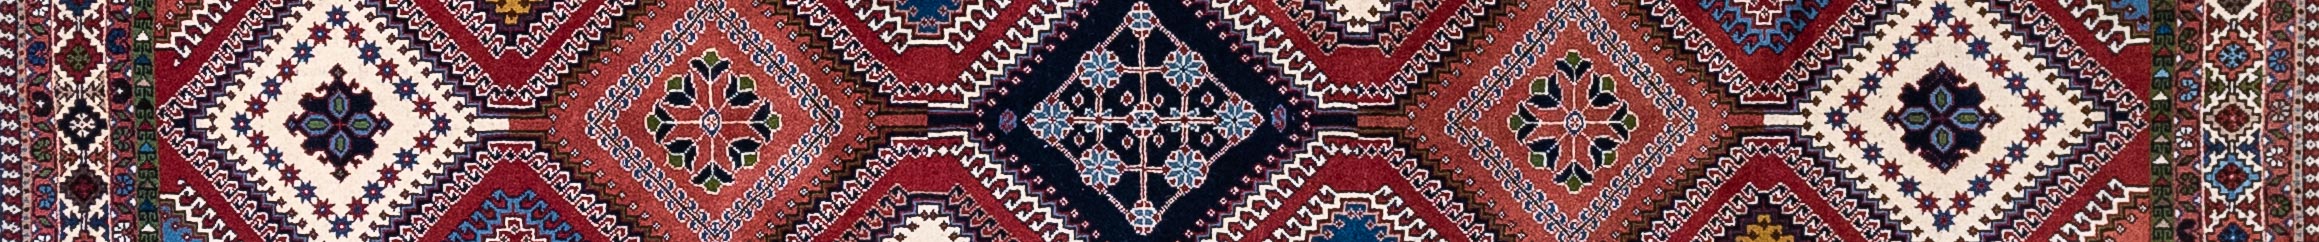 Yalameh Persian Carpet Rug N1Carpet Canada Montreal Tapis Persan 2350